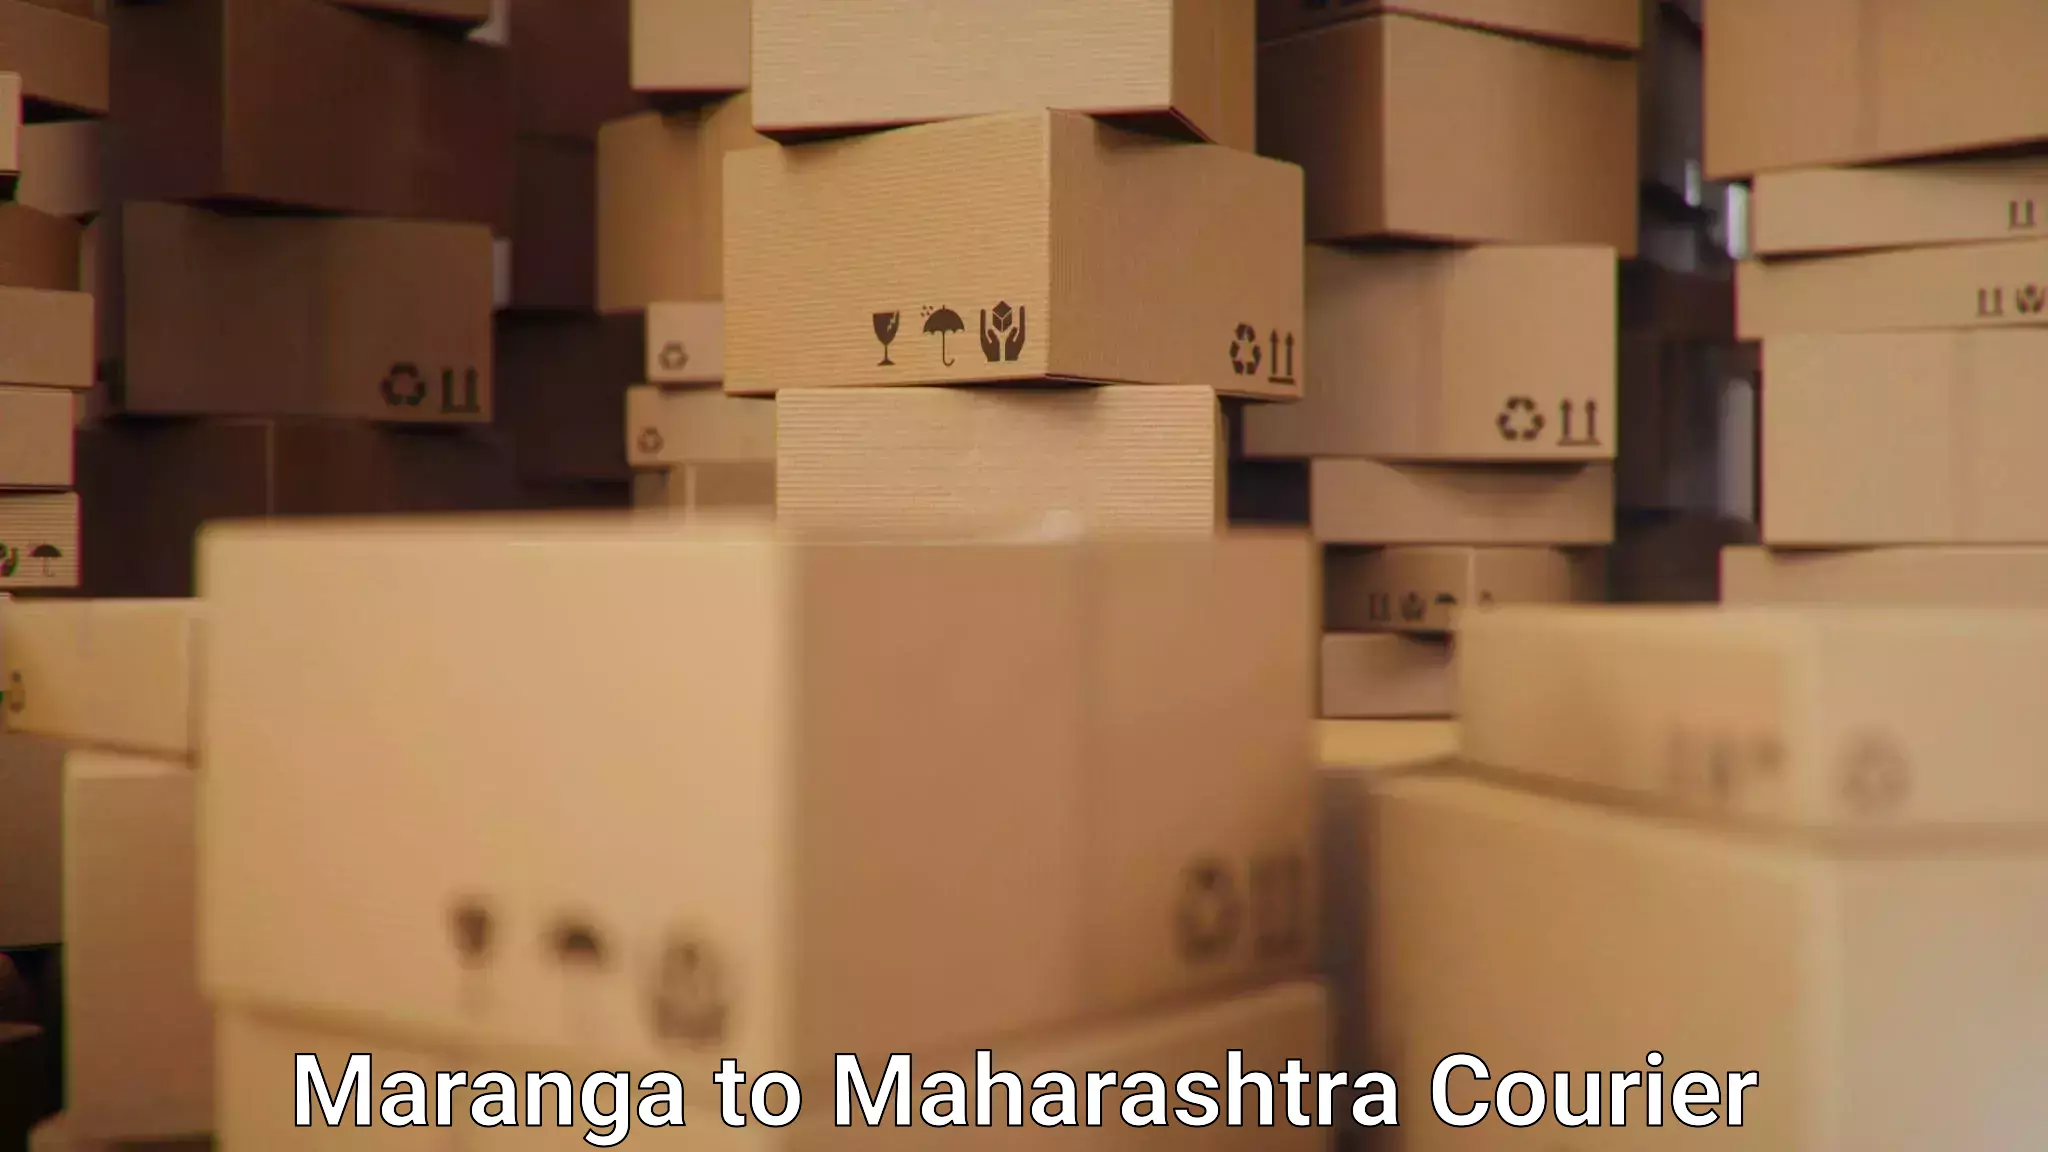 Urban courier service in Maranga to Shivajinagar